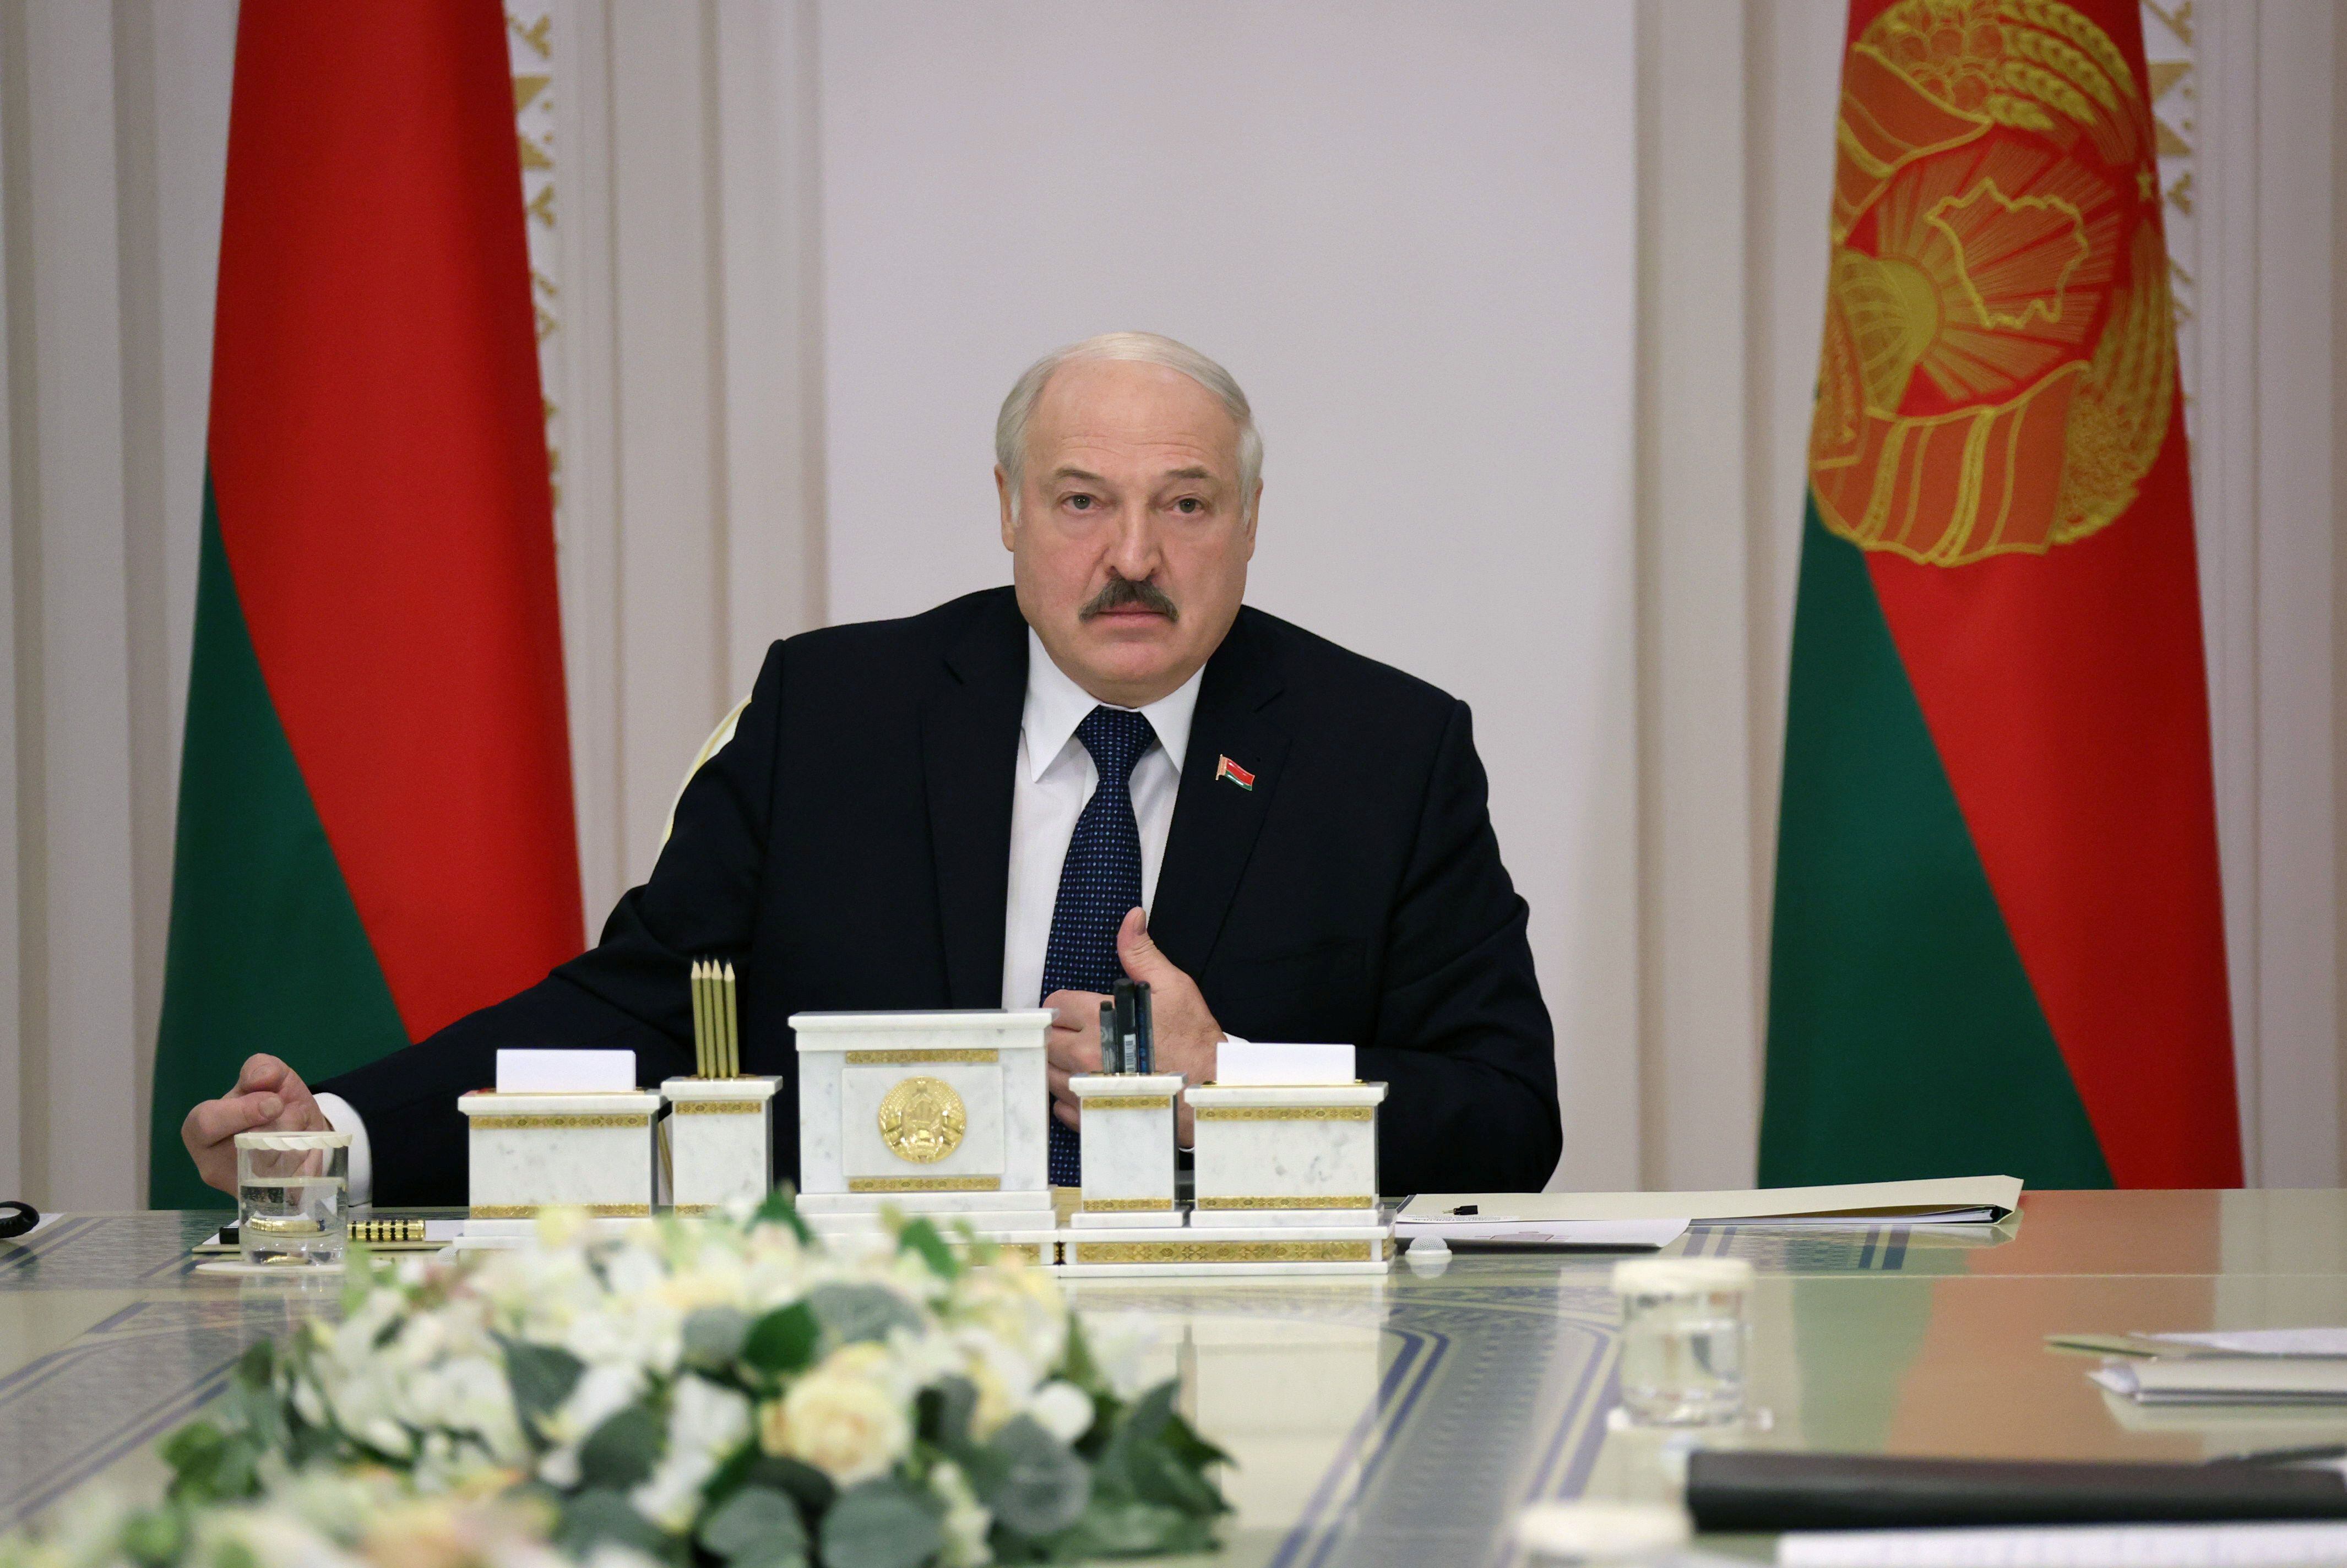 El presidente bielorruso, Aleksandr Lukashenko, en una reunión sobre la crisis migratoria celebrada en Minks el 16 de noviembre.